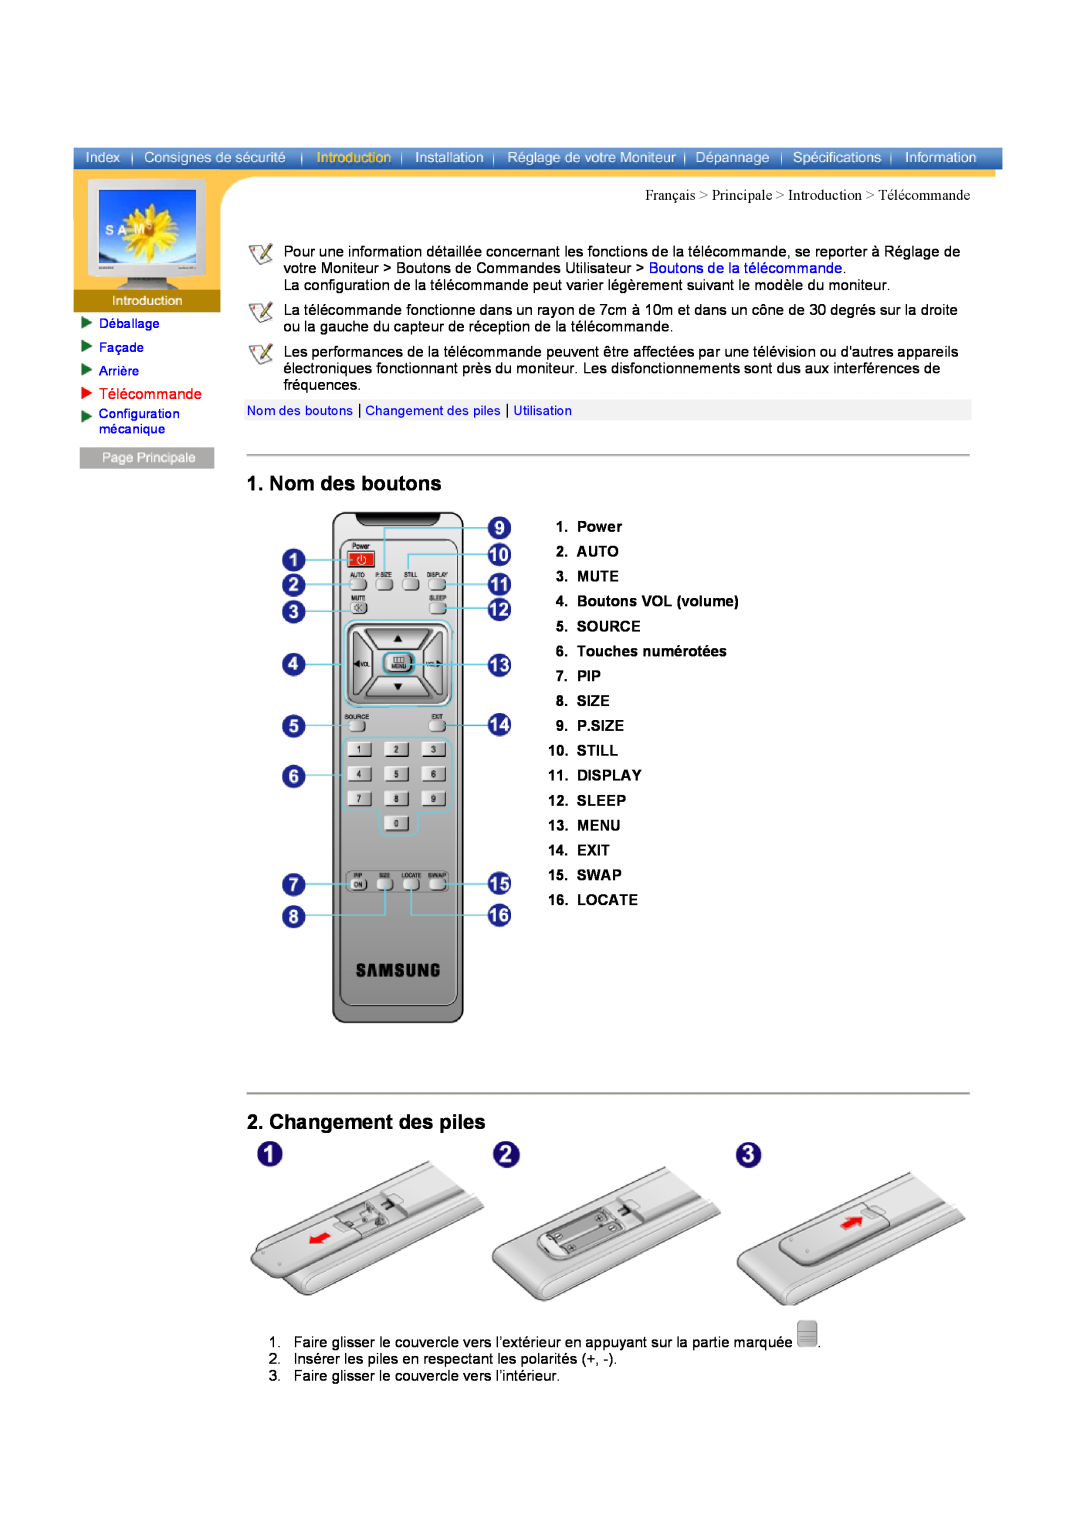 Samsung CK40PSNSF/EDC Nom des boutons, Changement des piles, Télécommande, SLEEP 13. MENU 14. EXIT 15. SWAP 16. LOCATE 